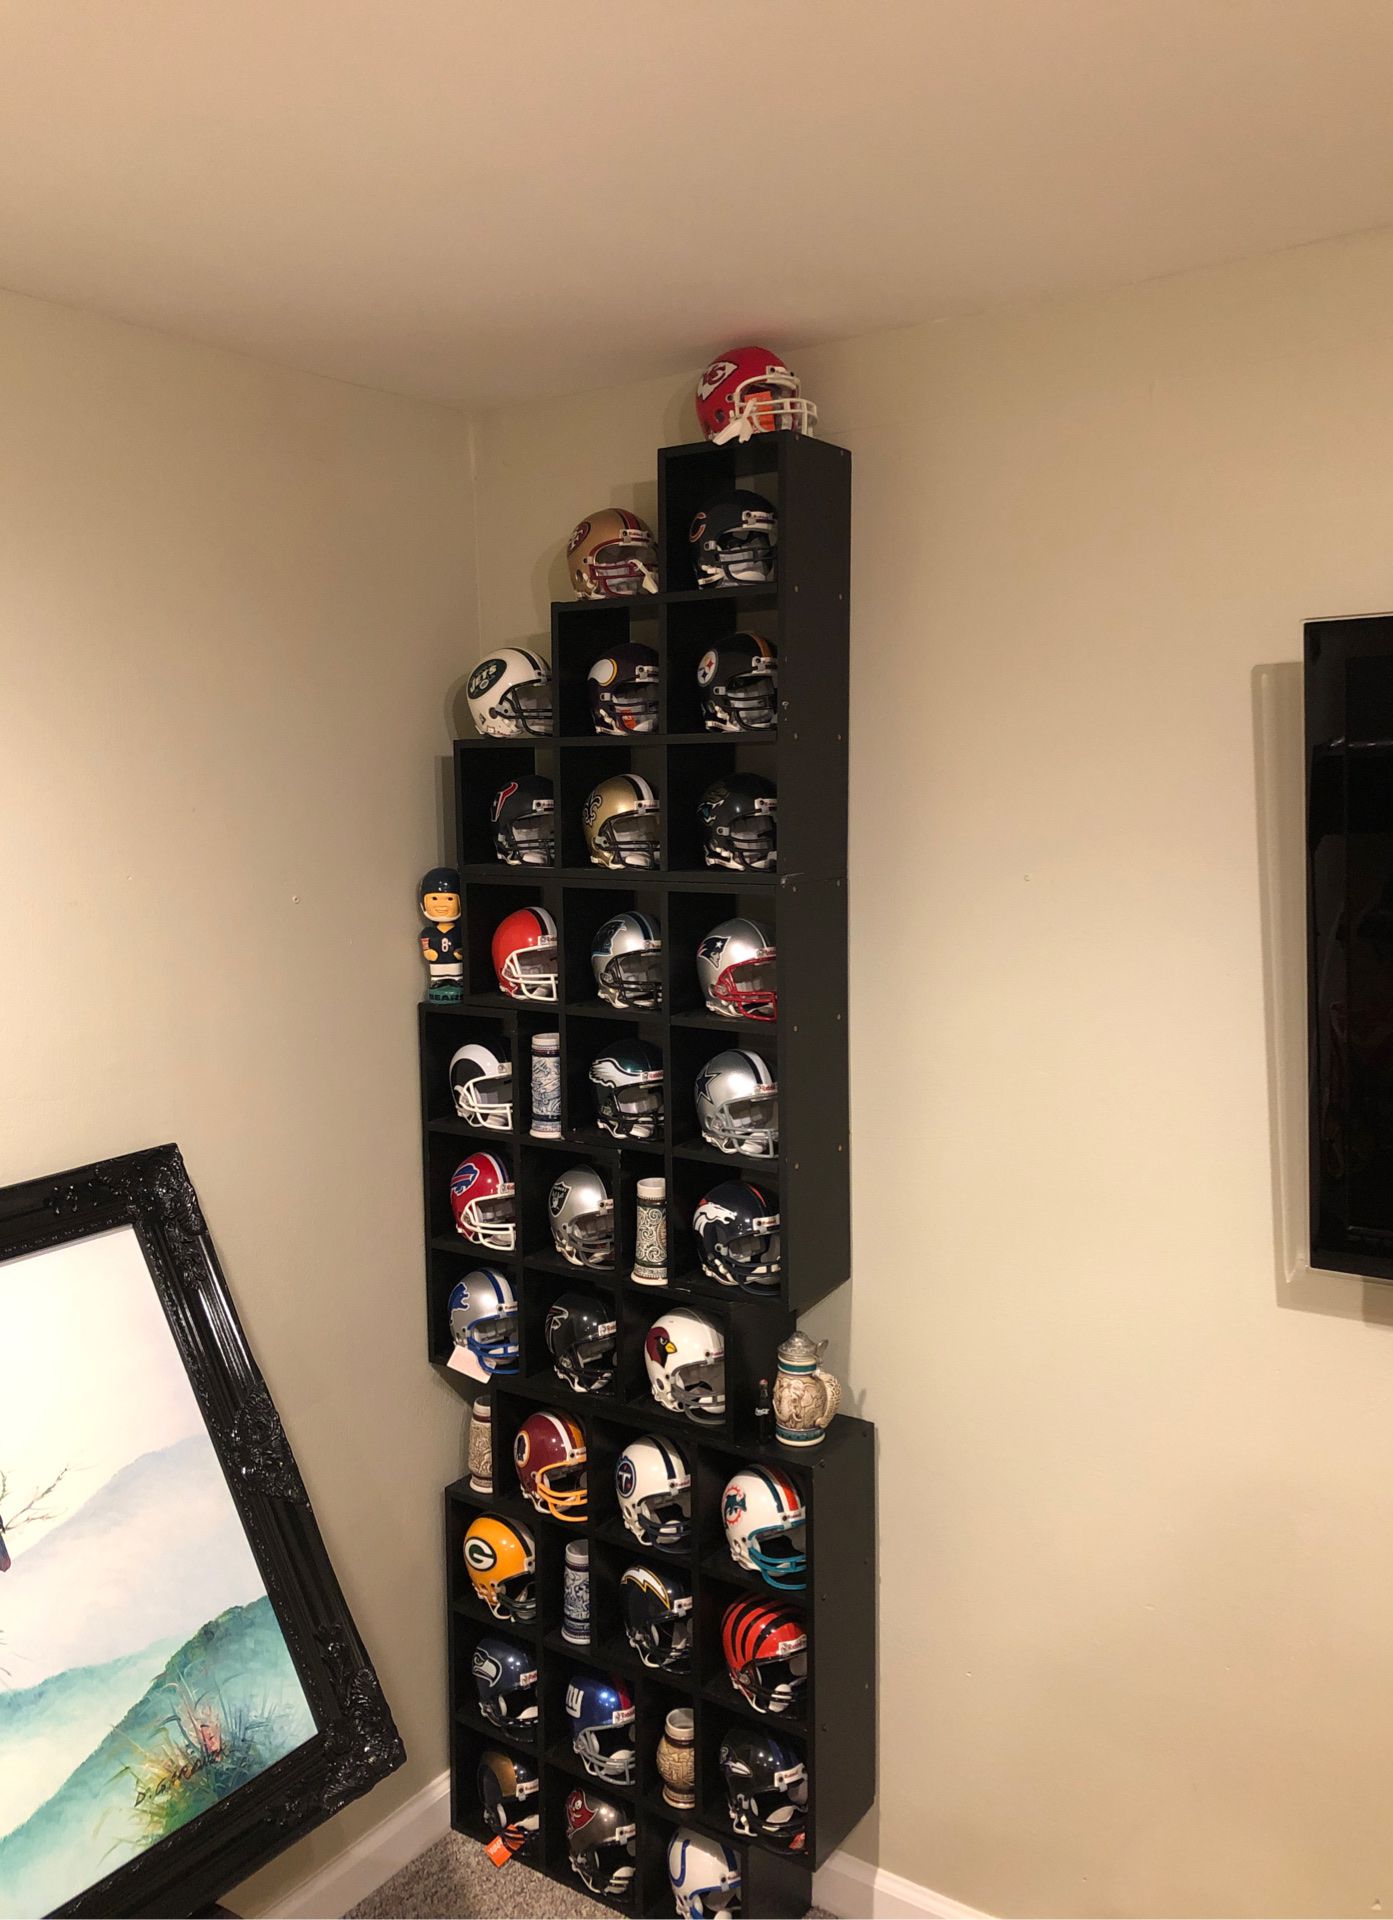 NFL helmet collection